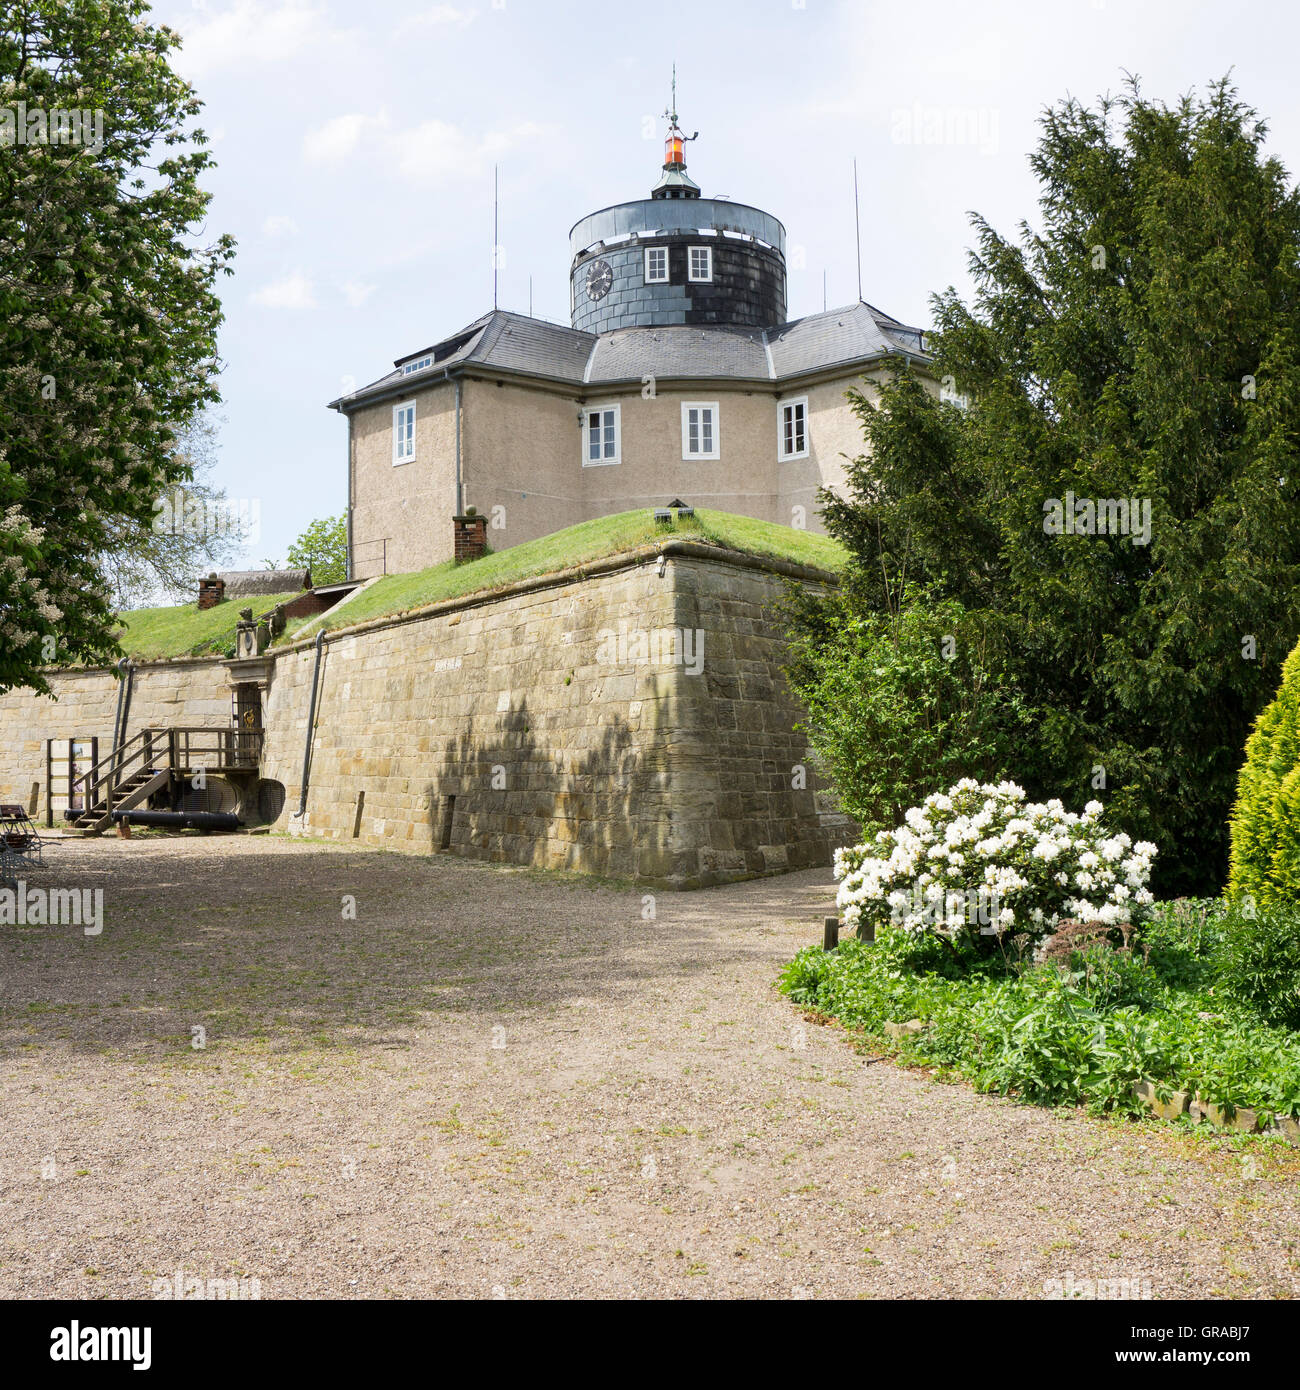 Festung Wilhelmstein, Steinhuder Meer, Wunsdorf, untere Sachsen, Deutschland, Europa Stockfoto